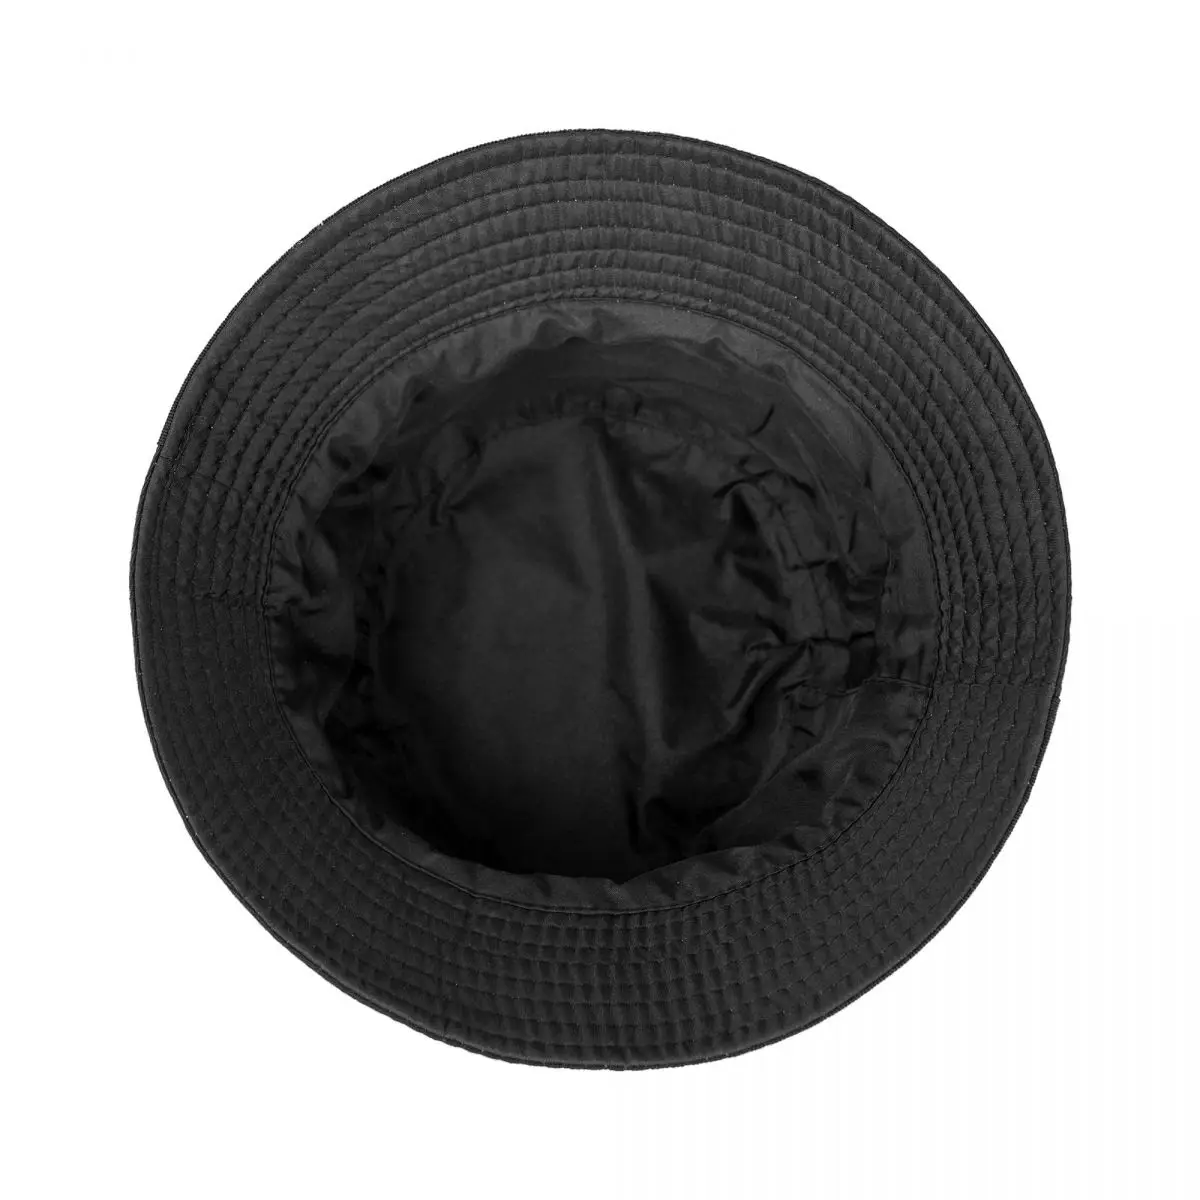 Новая женская кепка BIGFLO et OLI - VISIONNAIRE в винтажном стиле Sunhat Rave Boy. Изображение 1